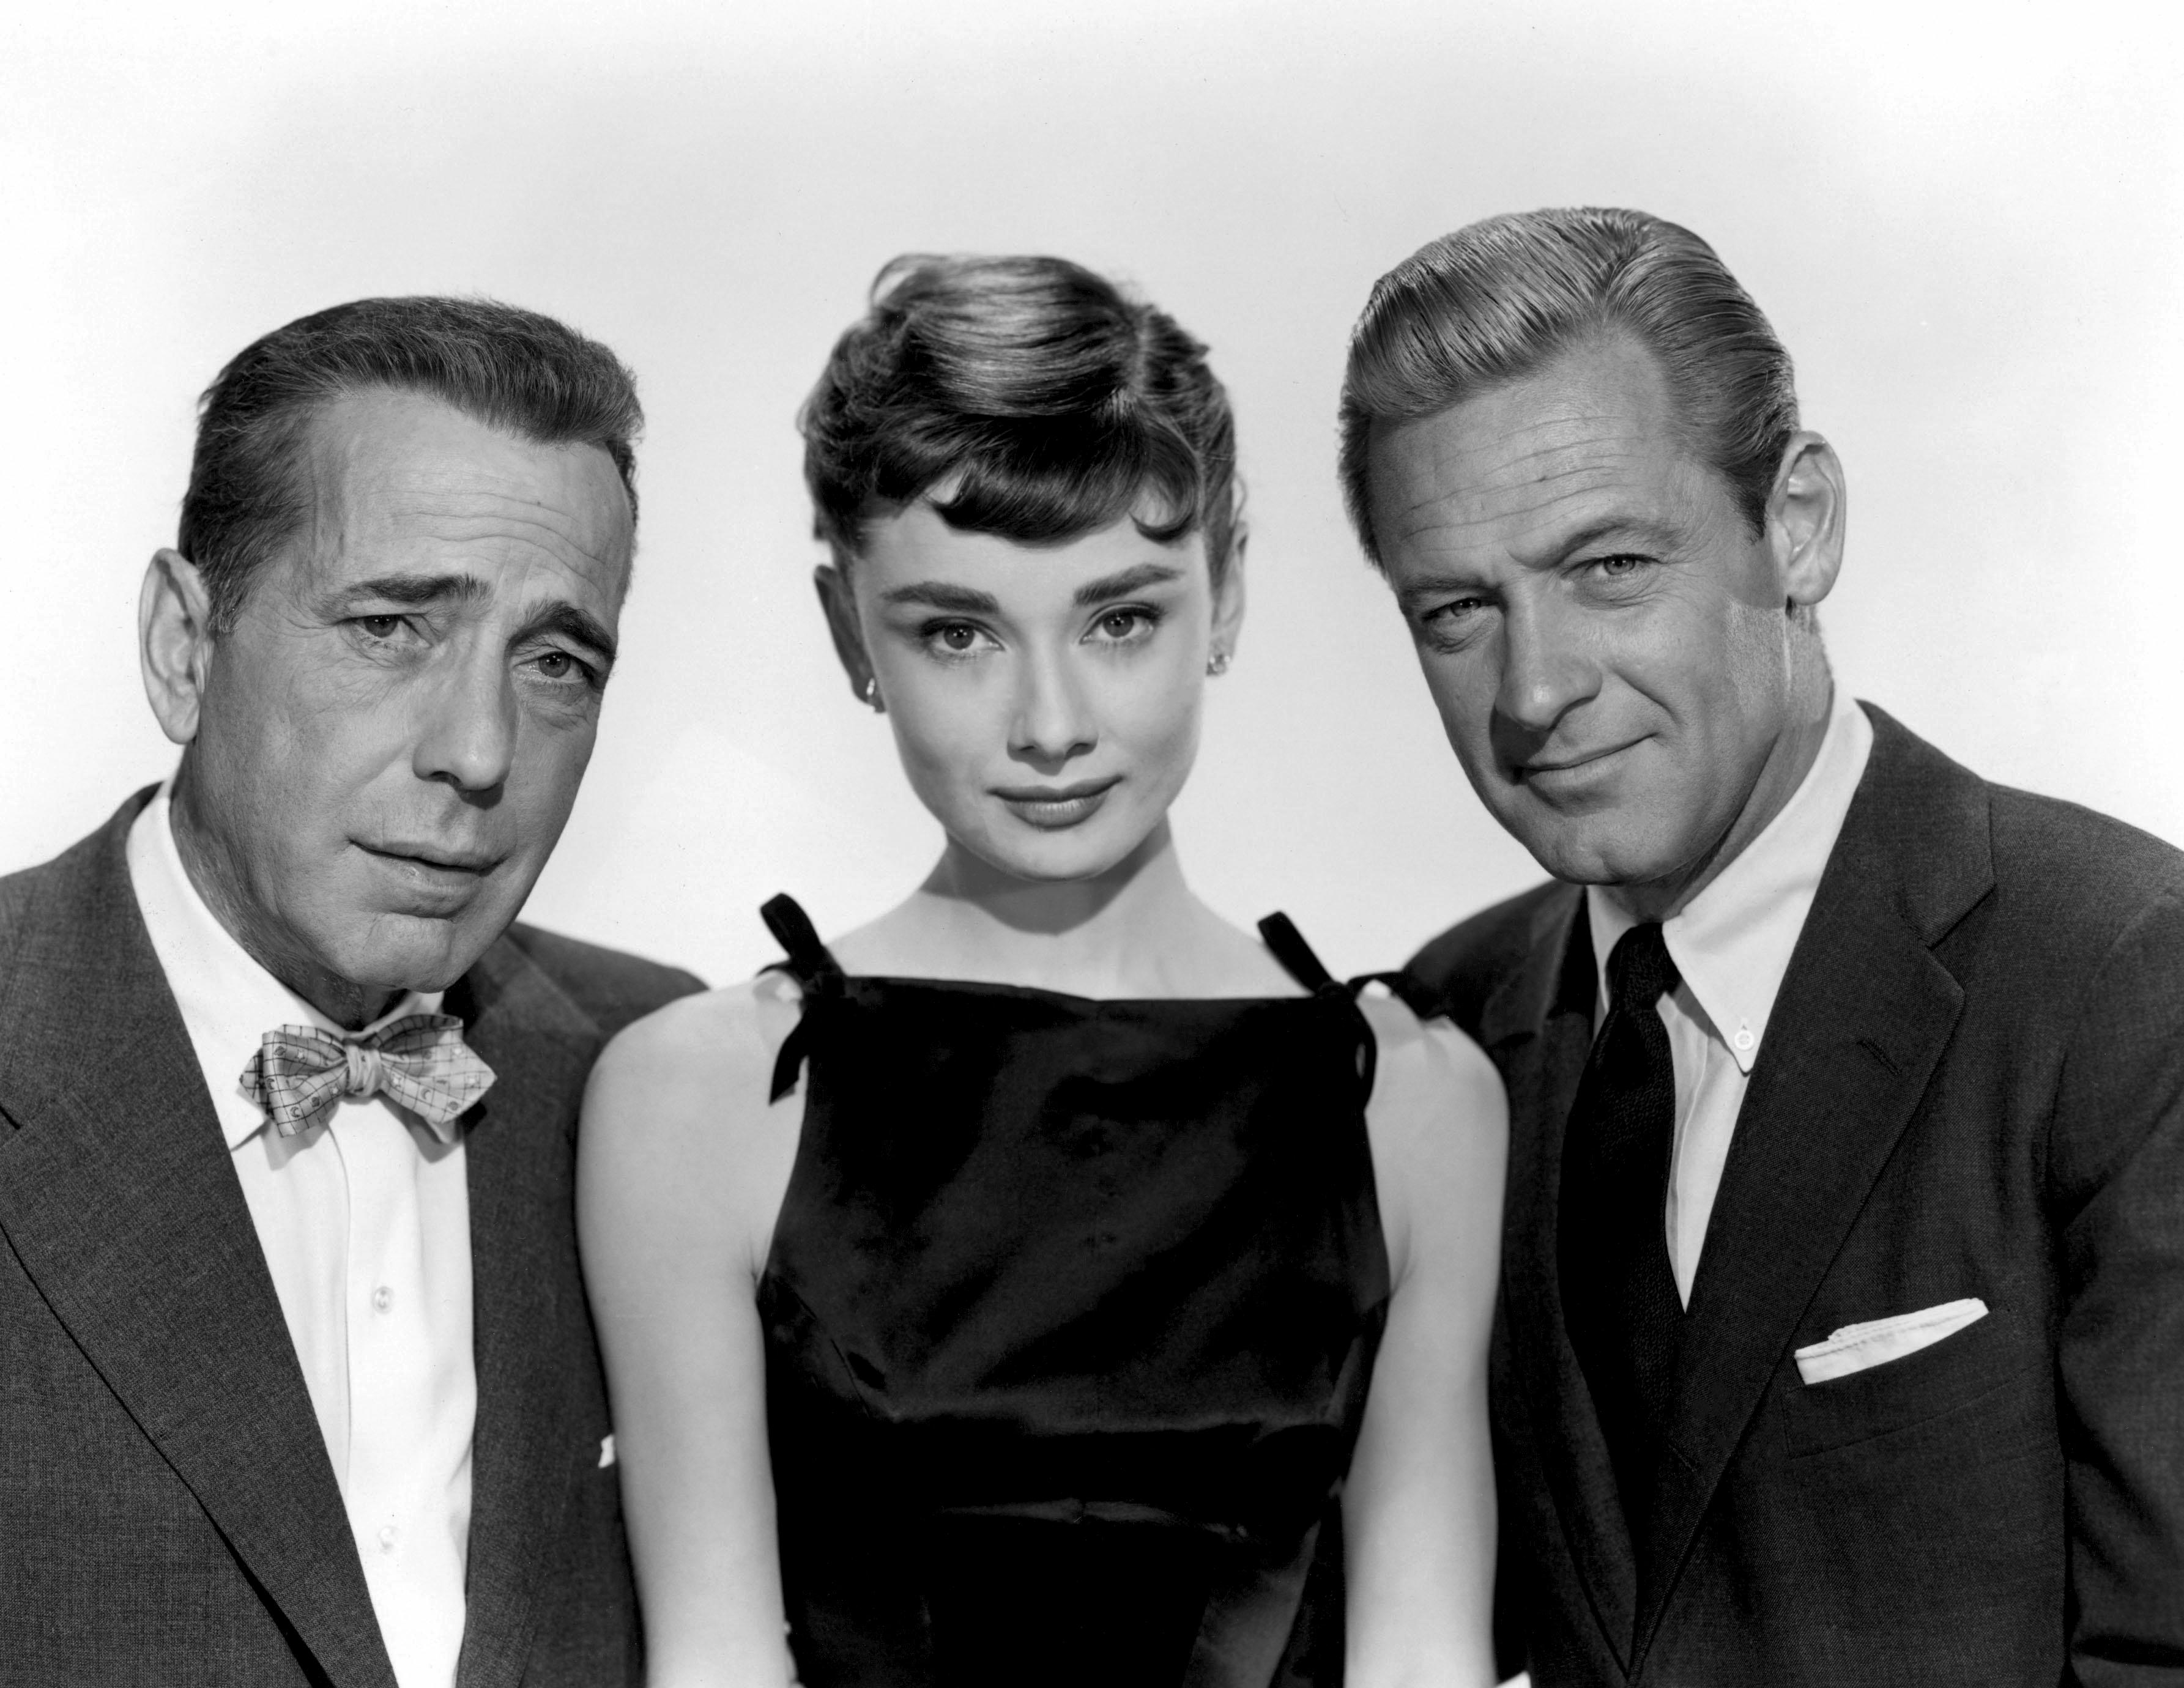 Unknown Portrait Photograph - Audrey Hepburn, Humphrey Bogart, and William Holden Globe Photos Fine Art Print